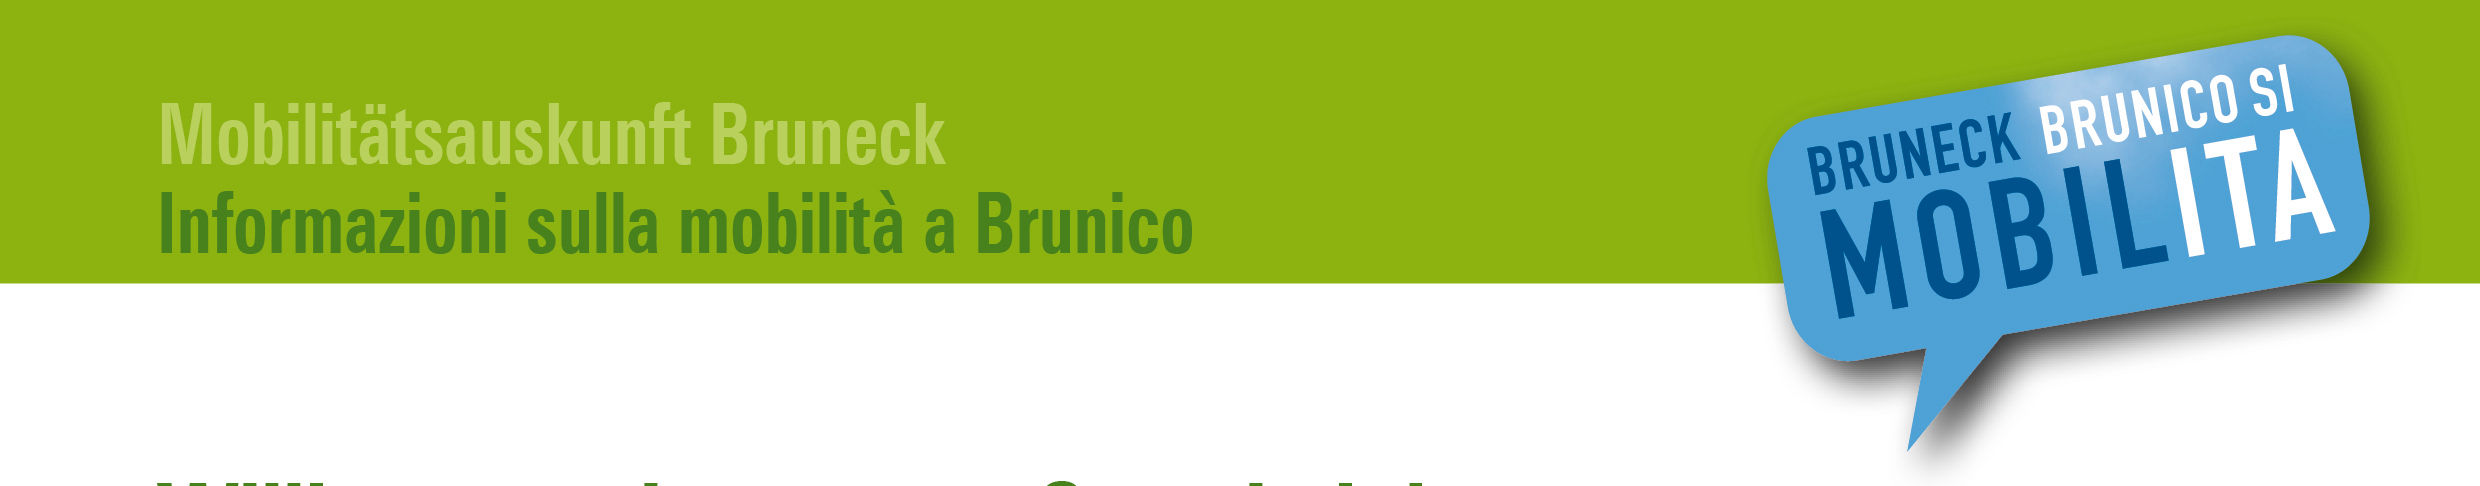 Bruneck mobil testen! Testa la mobilità a Brunico! Sehr geehrte Damen und Herren, nun sind Sie bestens informiert über das umfangreiche lokale Mobilitätsangebot!